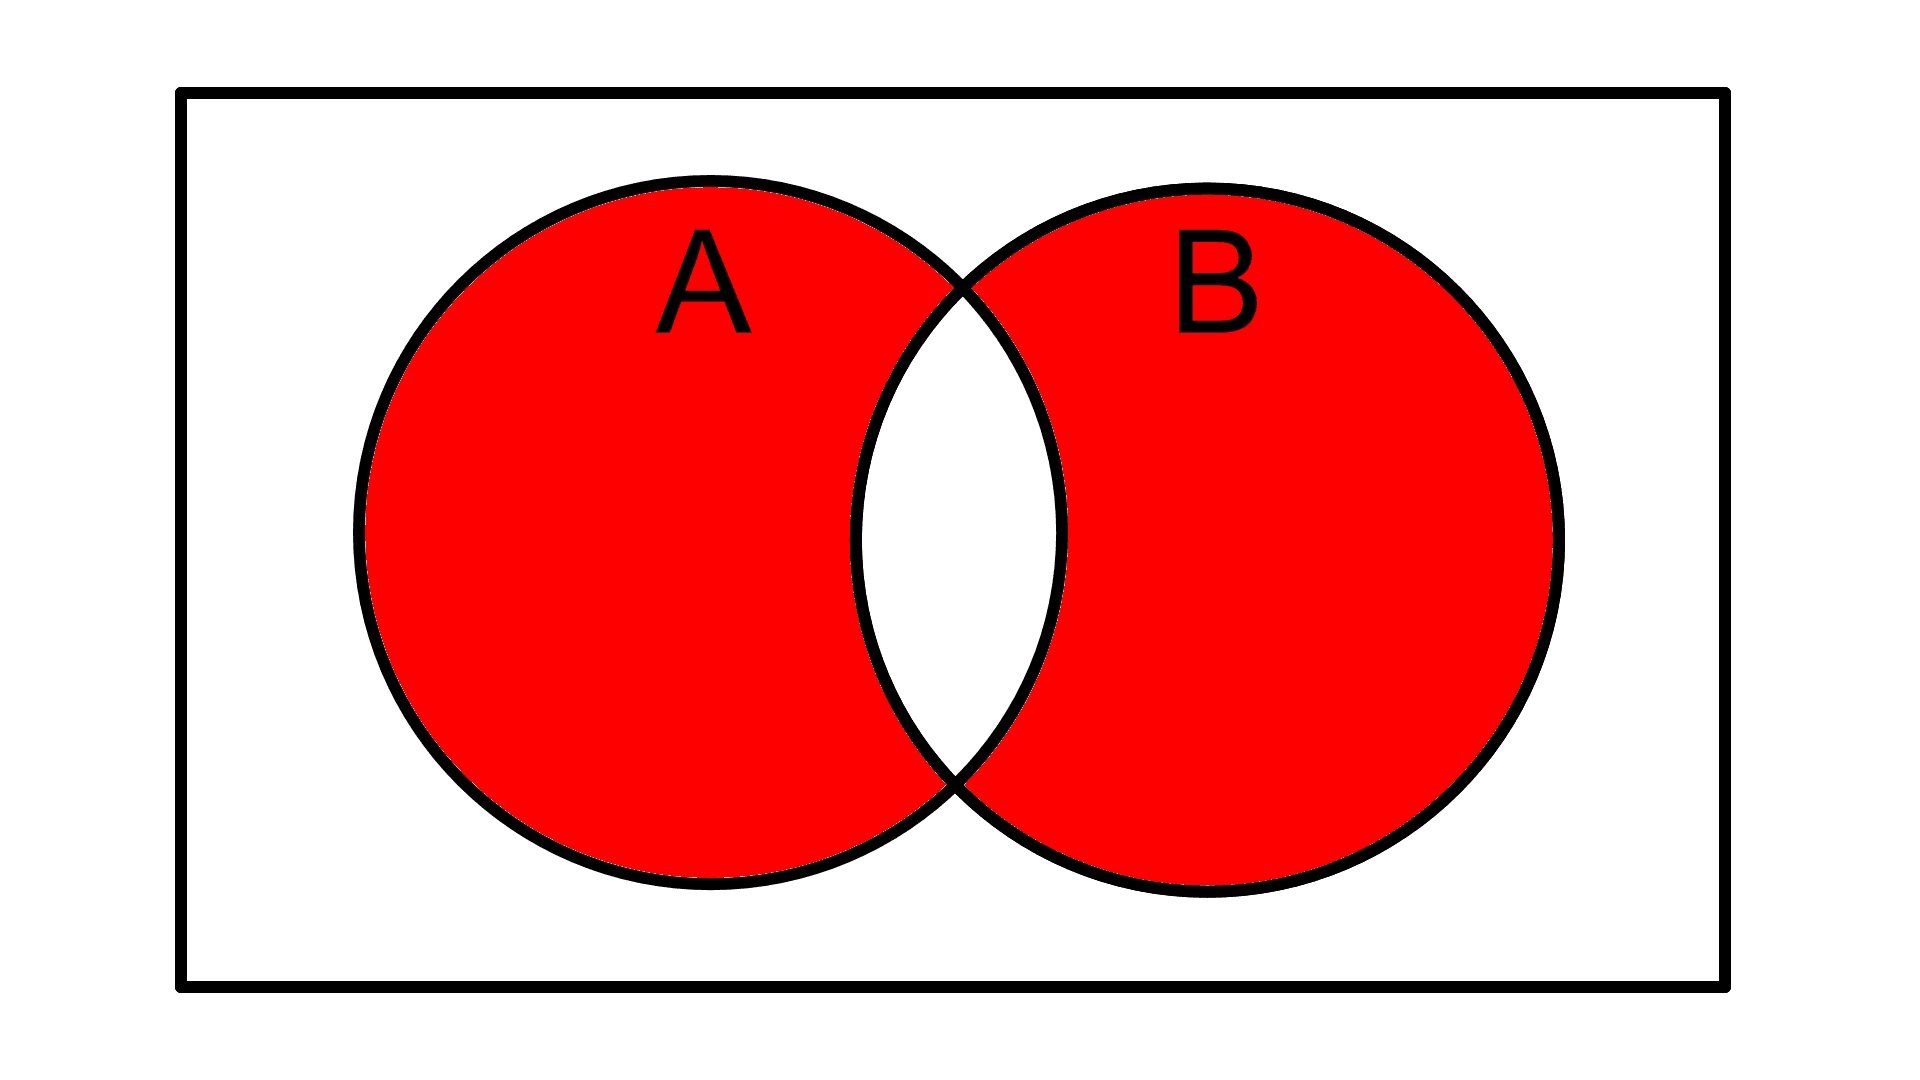 2 elipsy w prostokącie z zamalowanymi obiema elipsami z wyjątkiem ich części wspólnej.